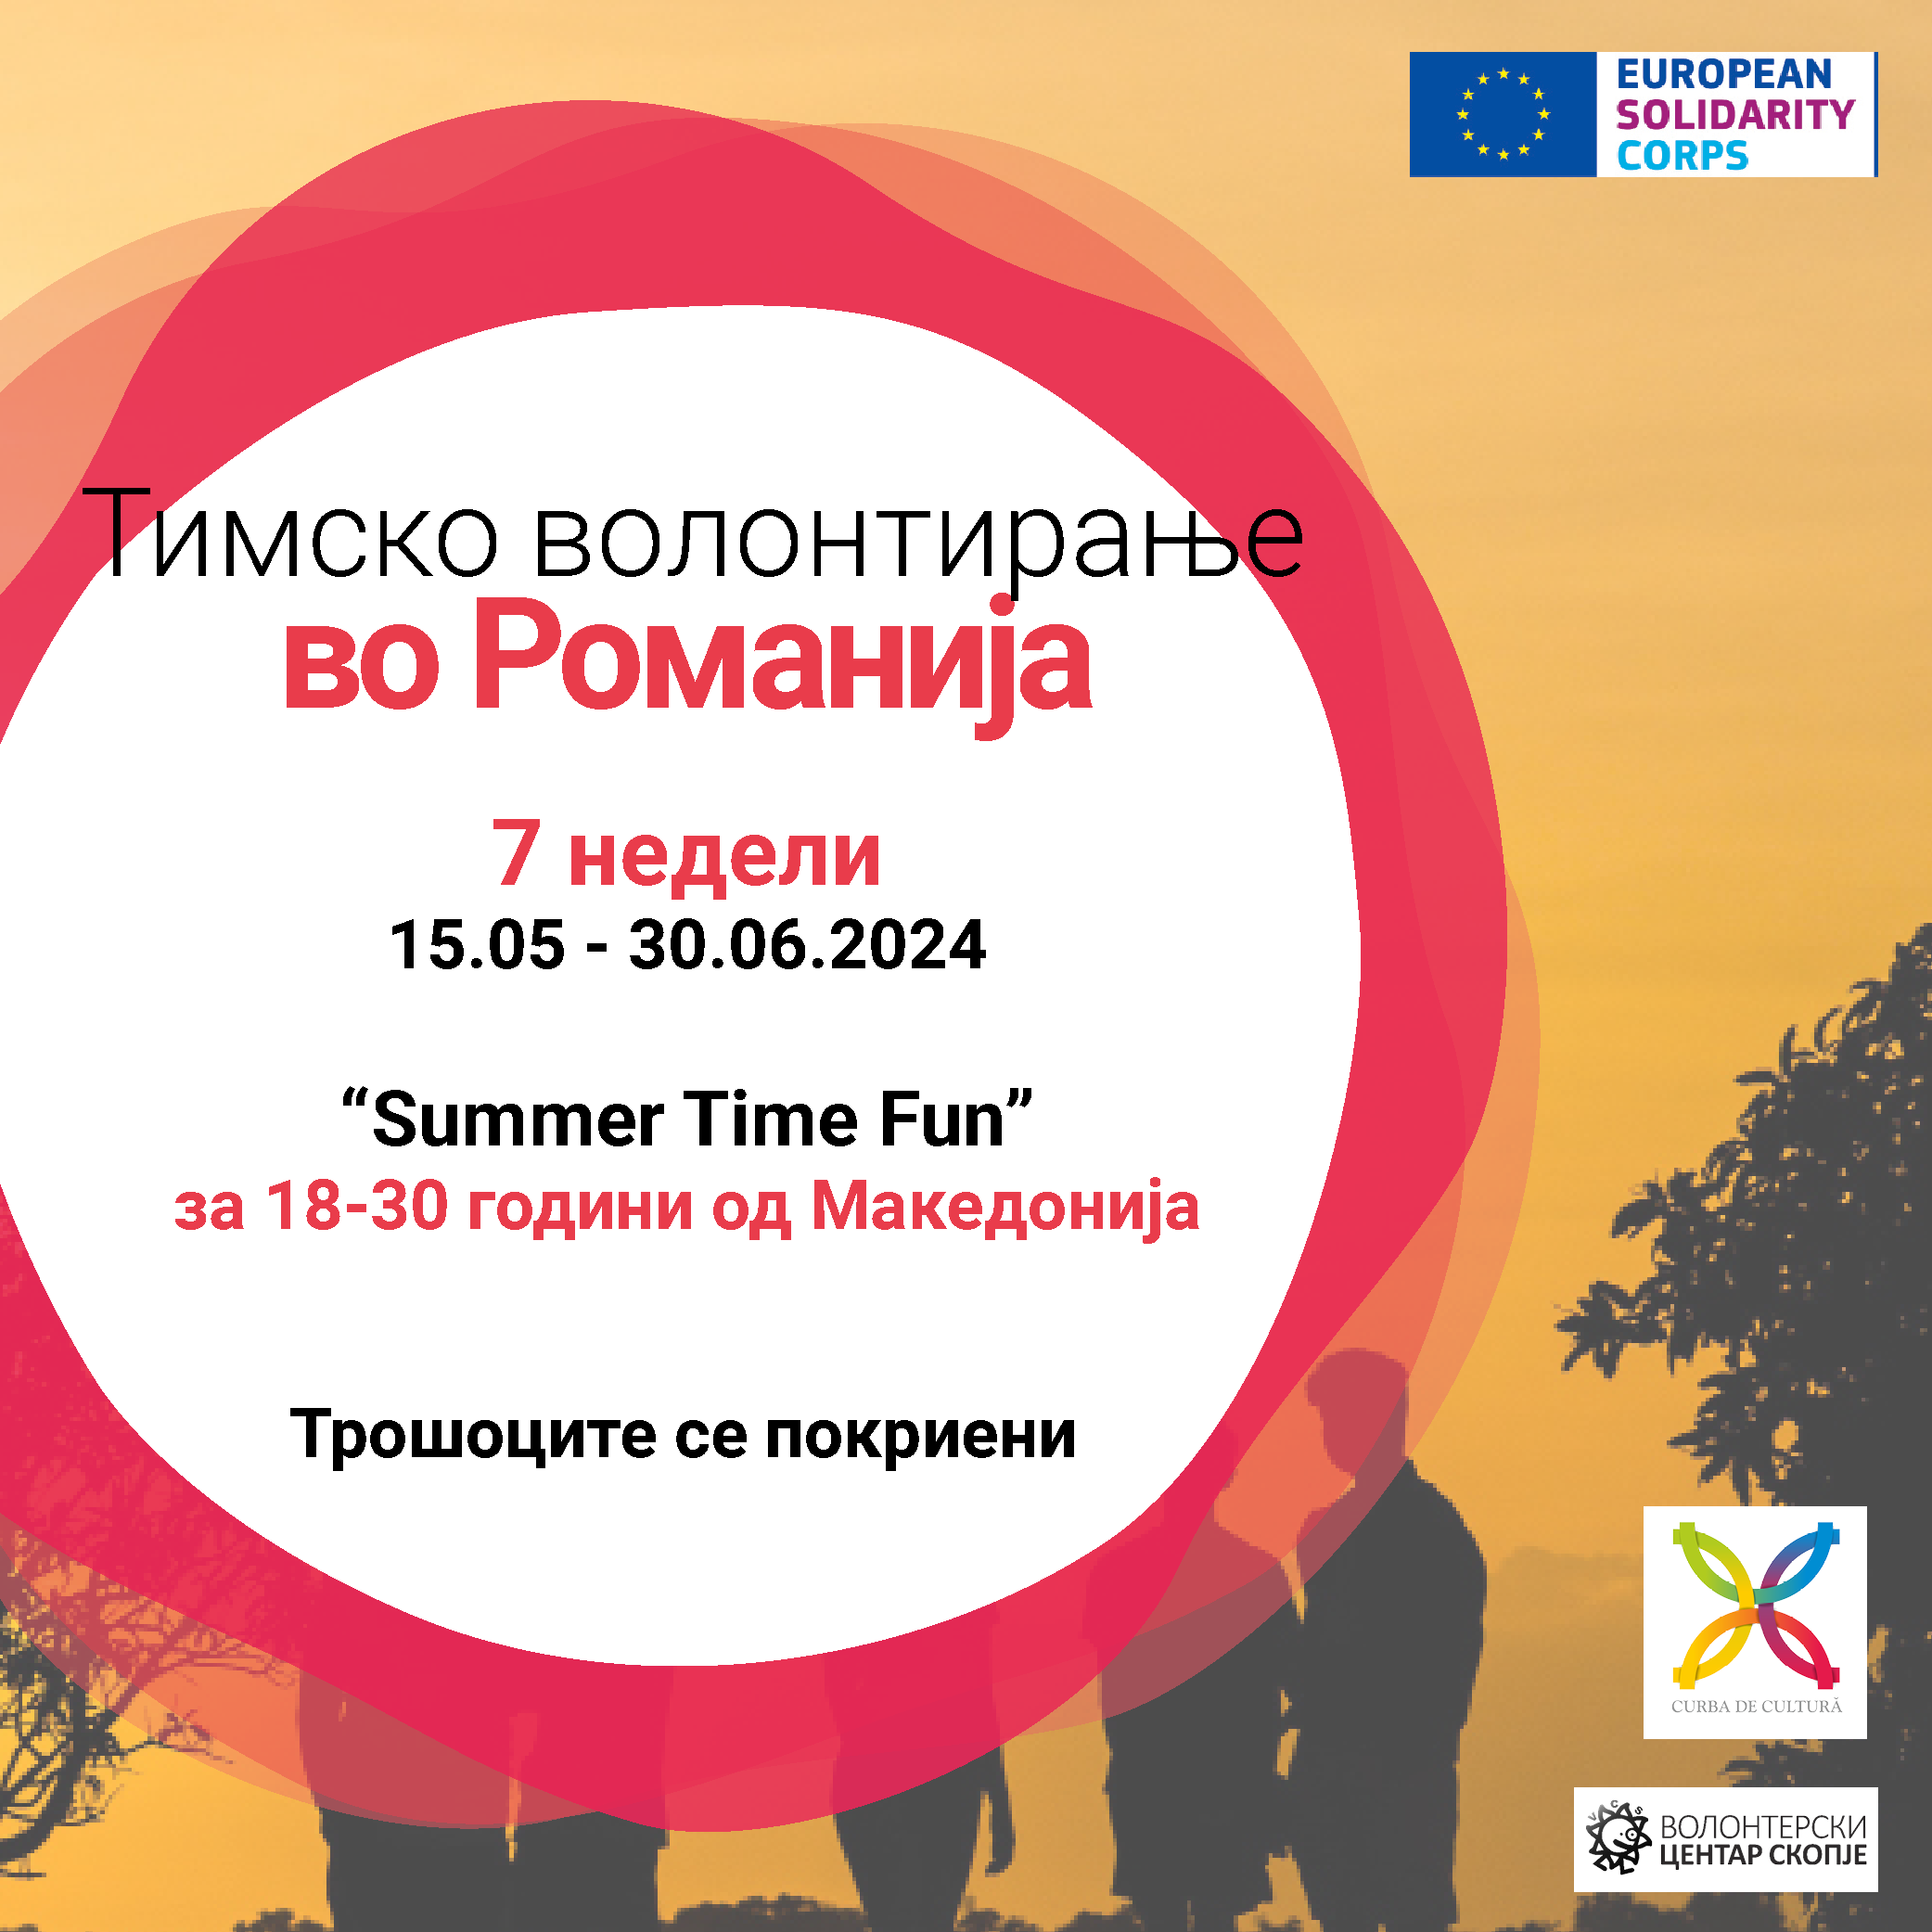 You are currently viewing Повик за волонтери во Романија!